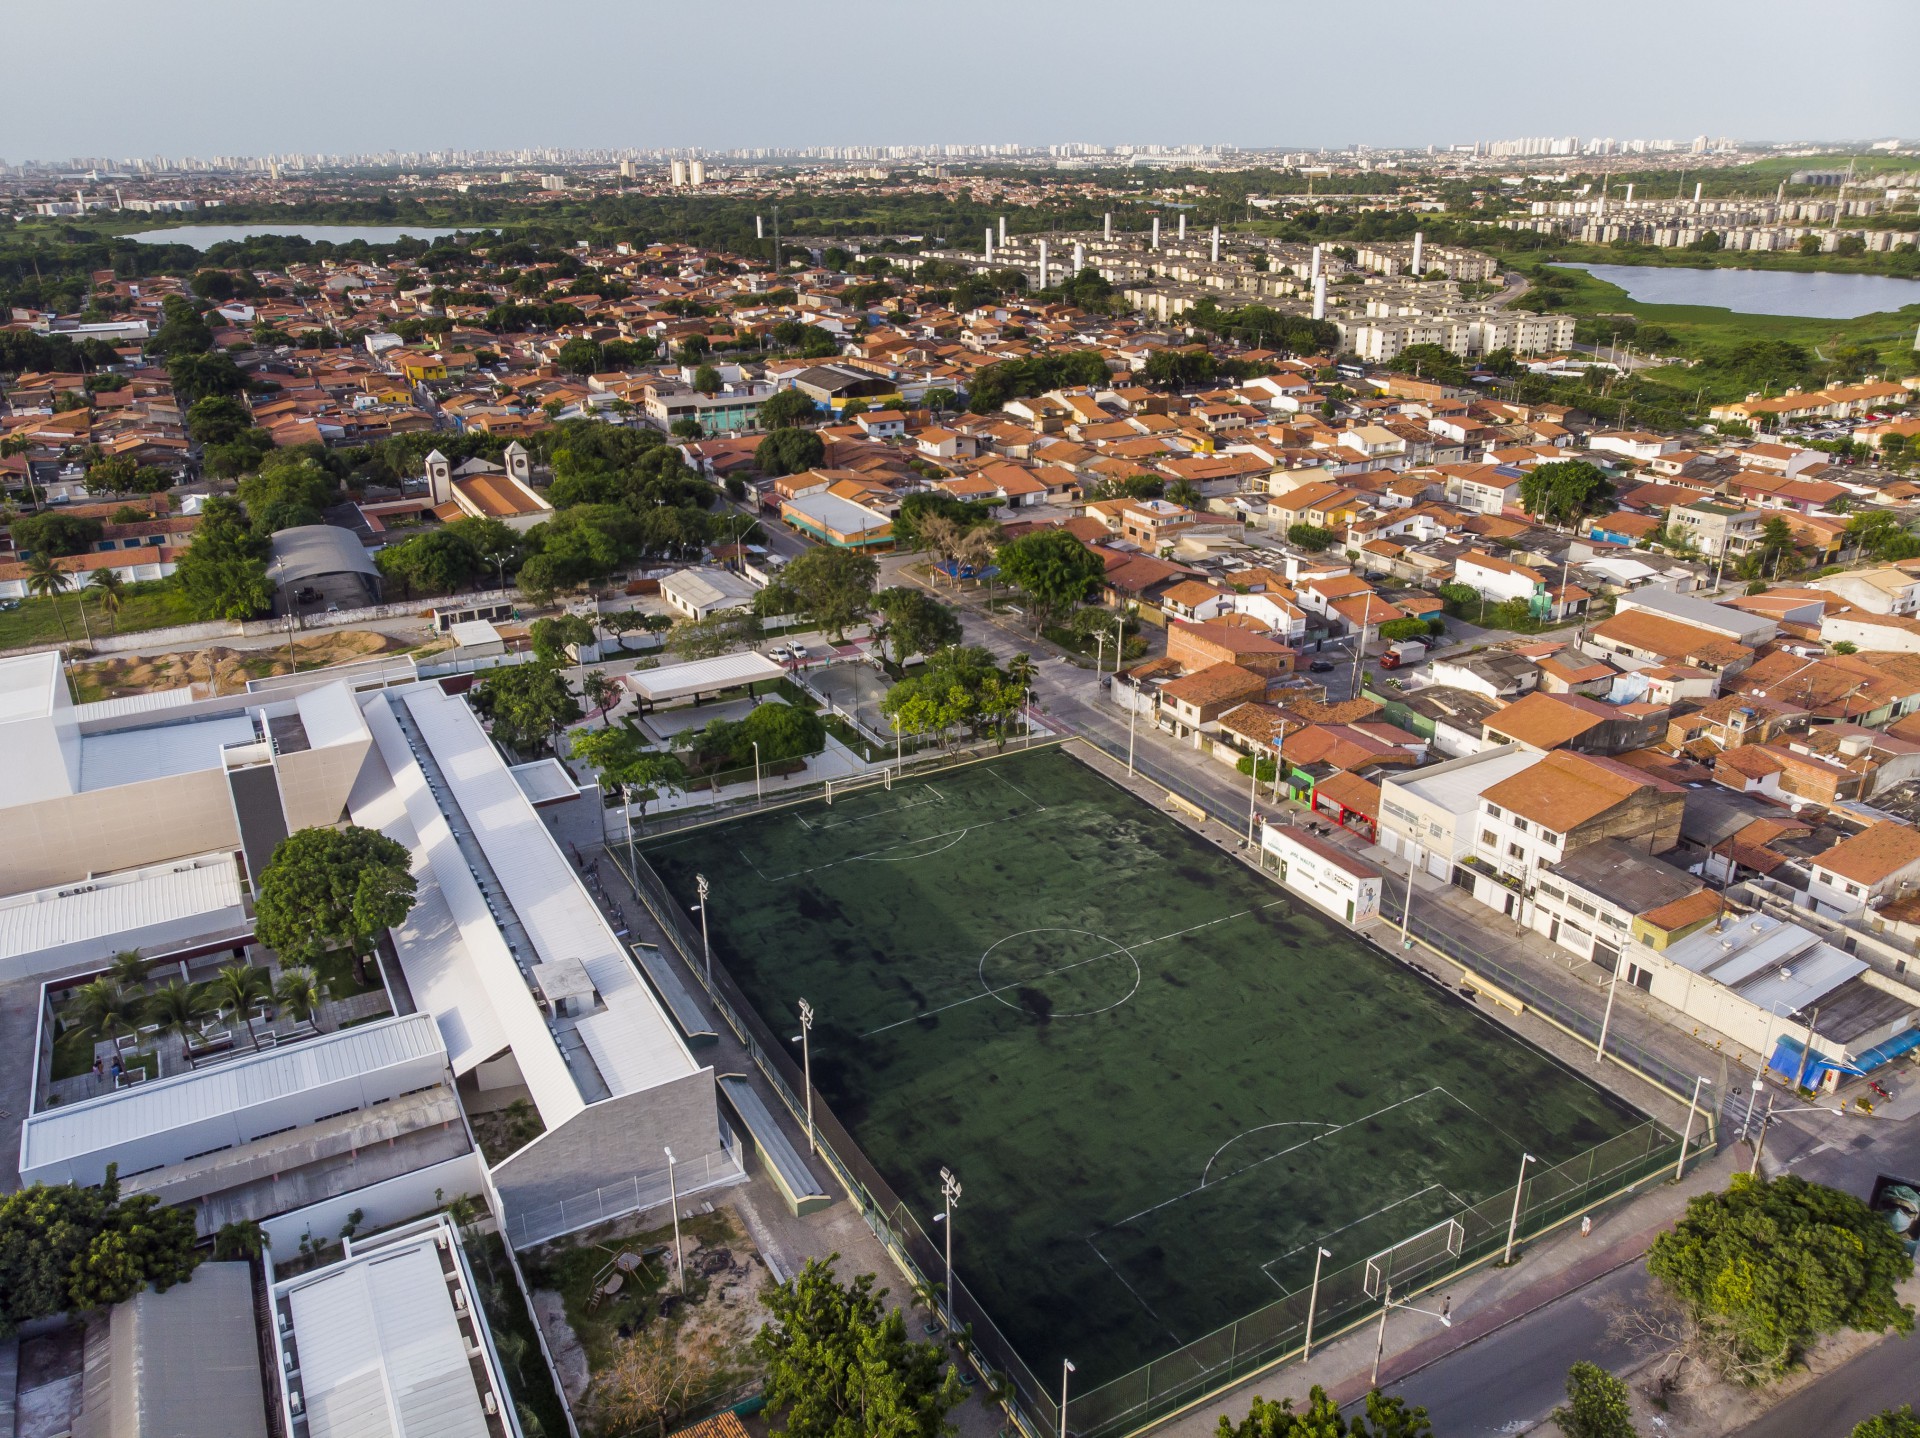  Vista aérea da Rede Cuca do bairro Prefeito José Walter, bairro em franca expansão(Foto: FCO FONTENELE)